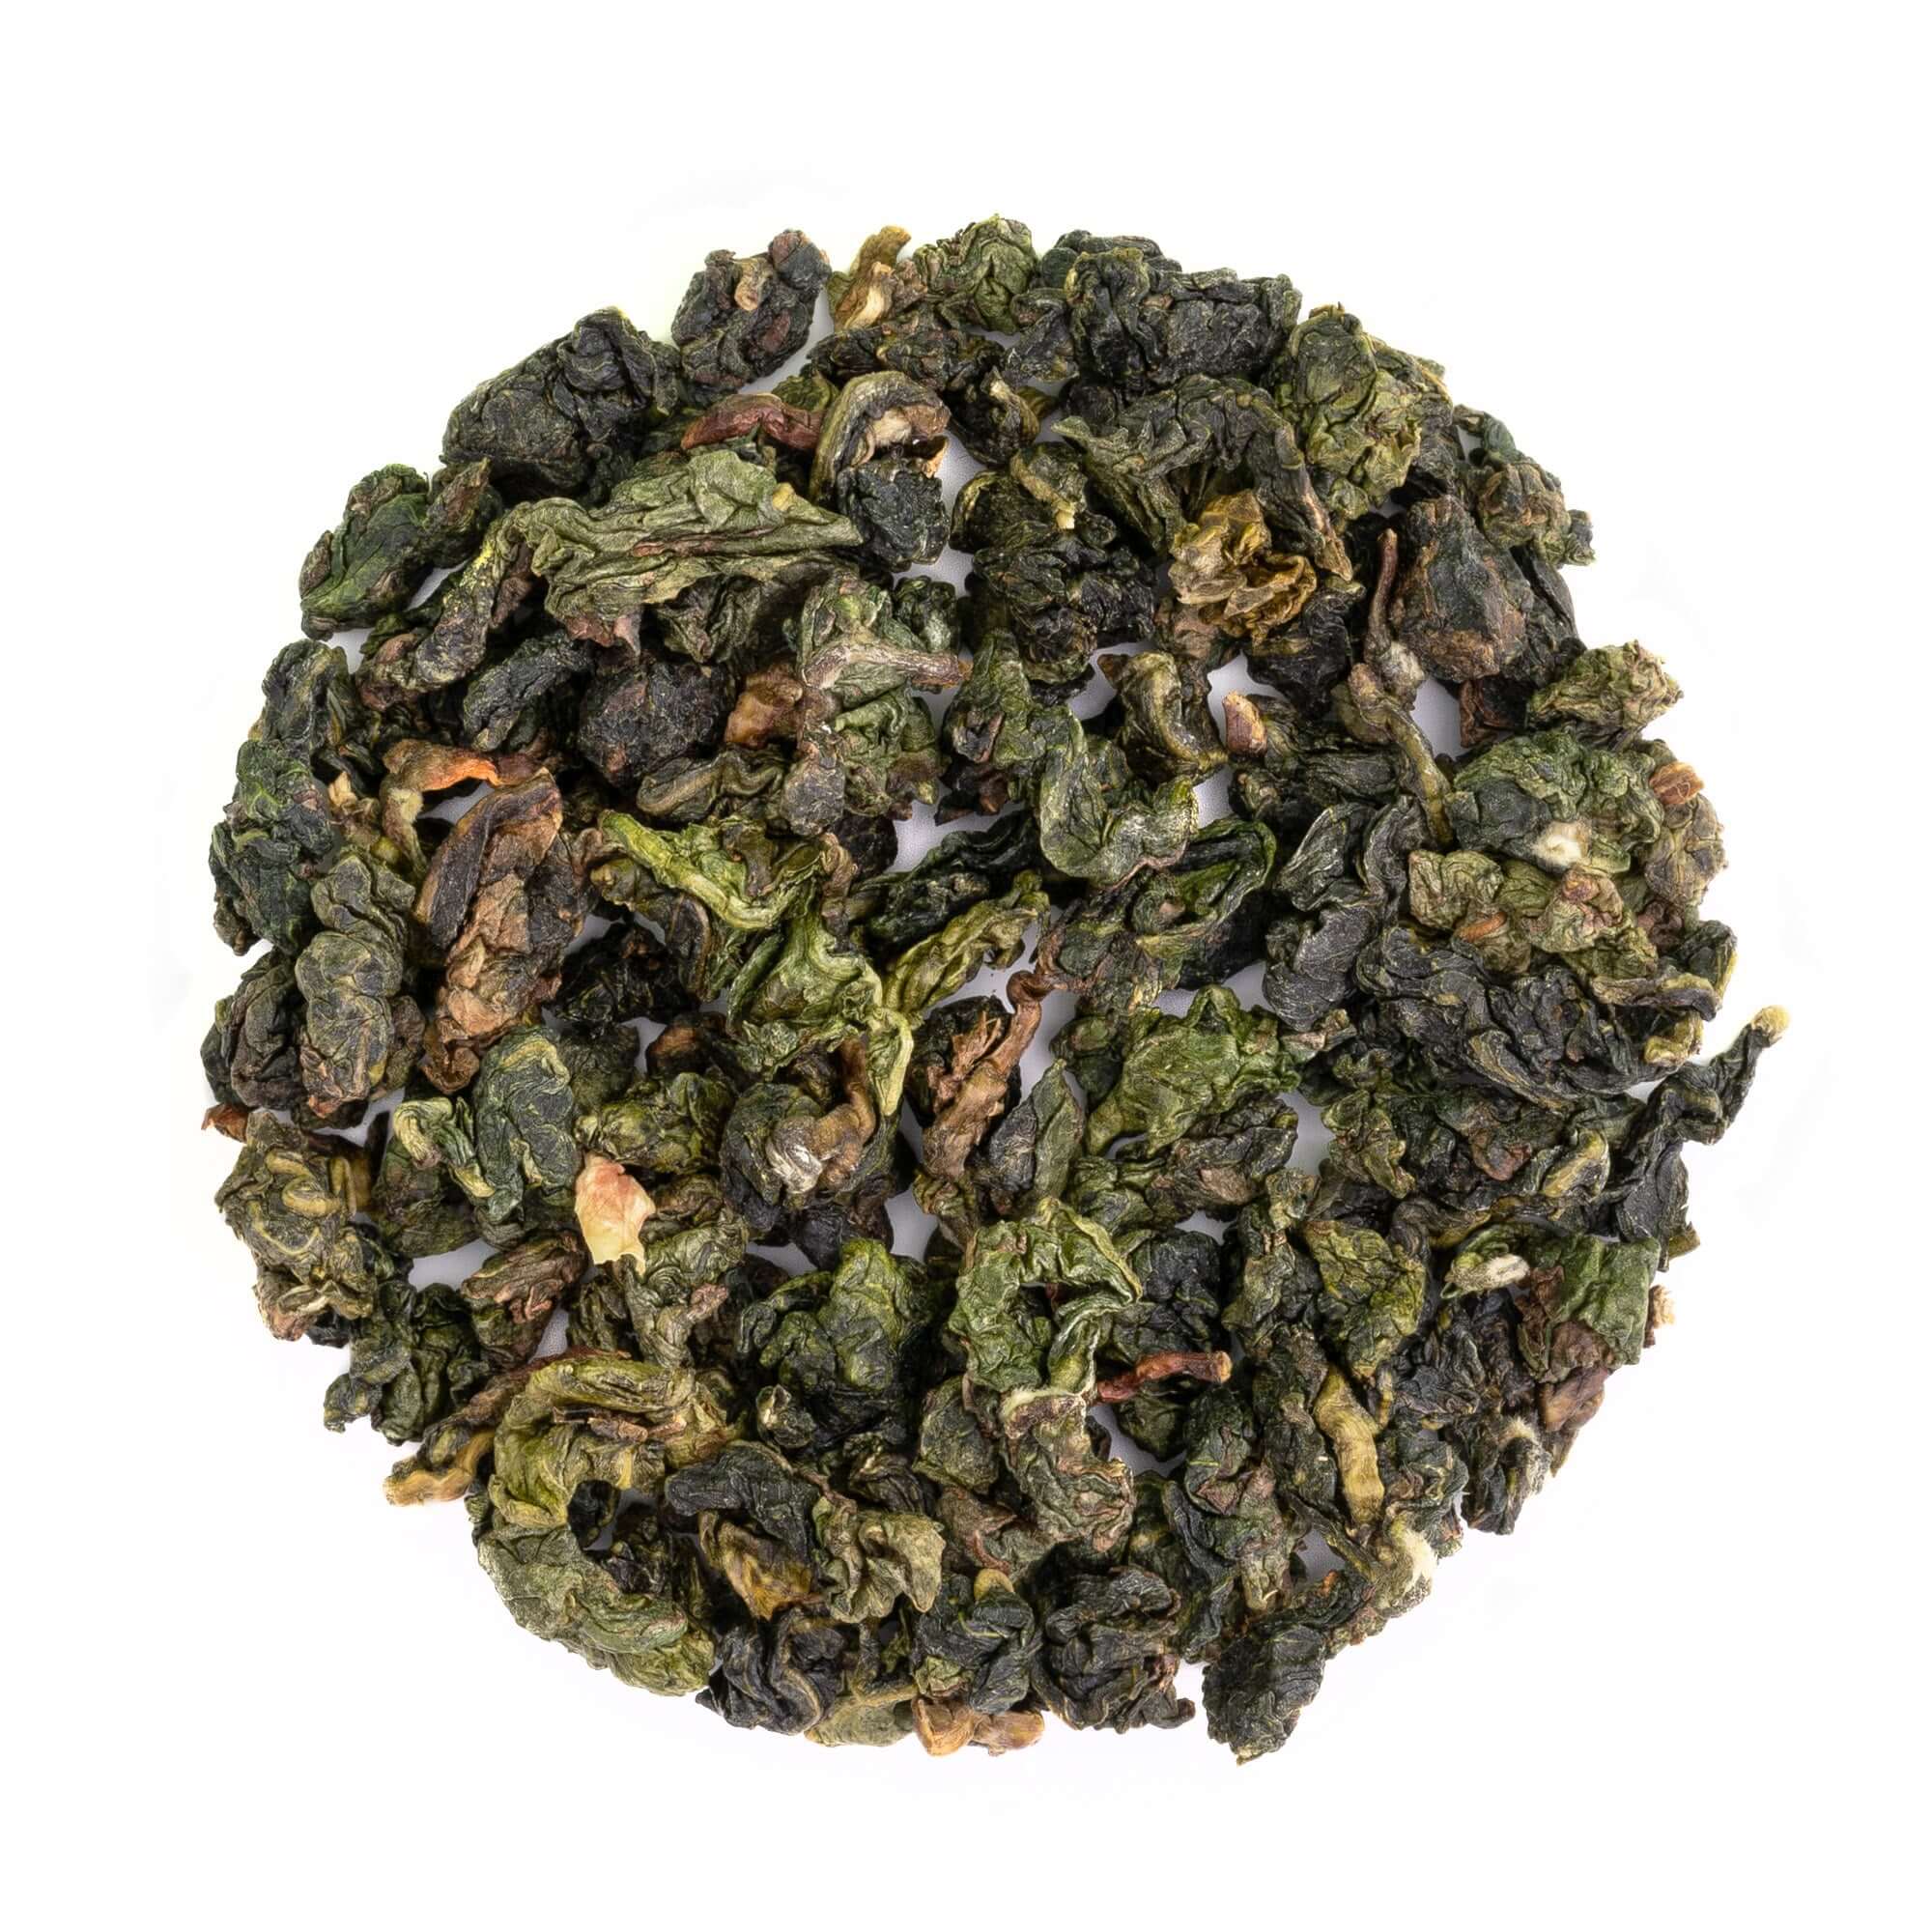 Jasmine Oolong - Artisan Loose Leaf Oolong Tea - Single-Origin Tea - Fujian Province - Scented with Jasmine Petals | Heavenly Tea Leaves